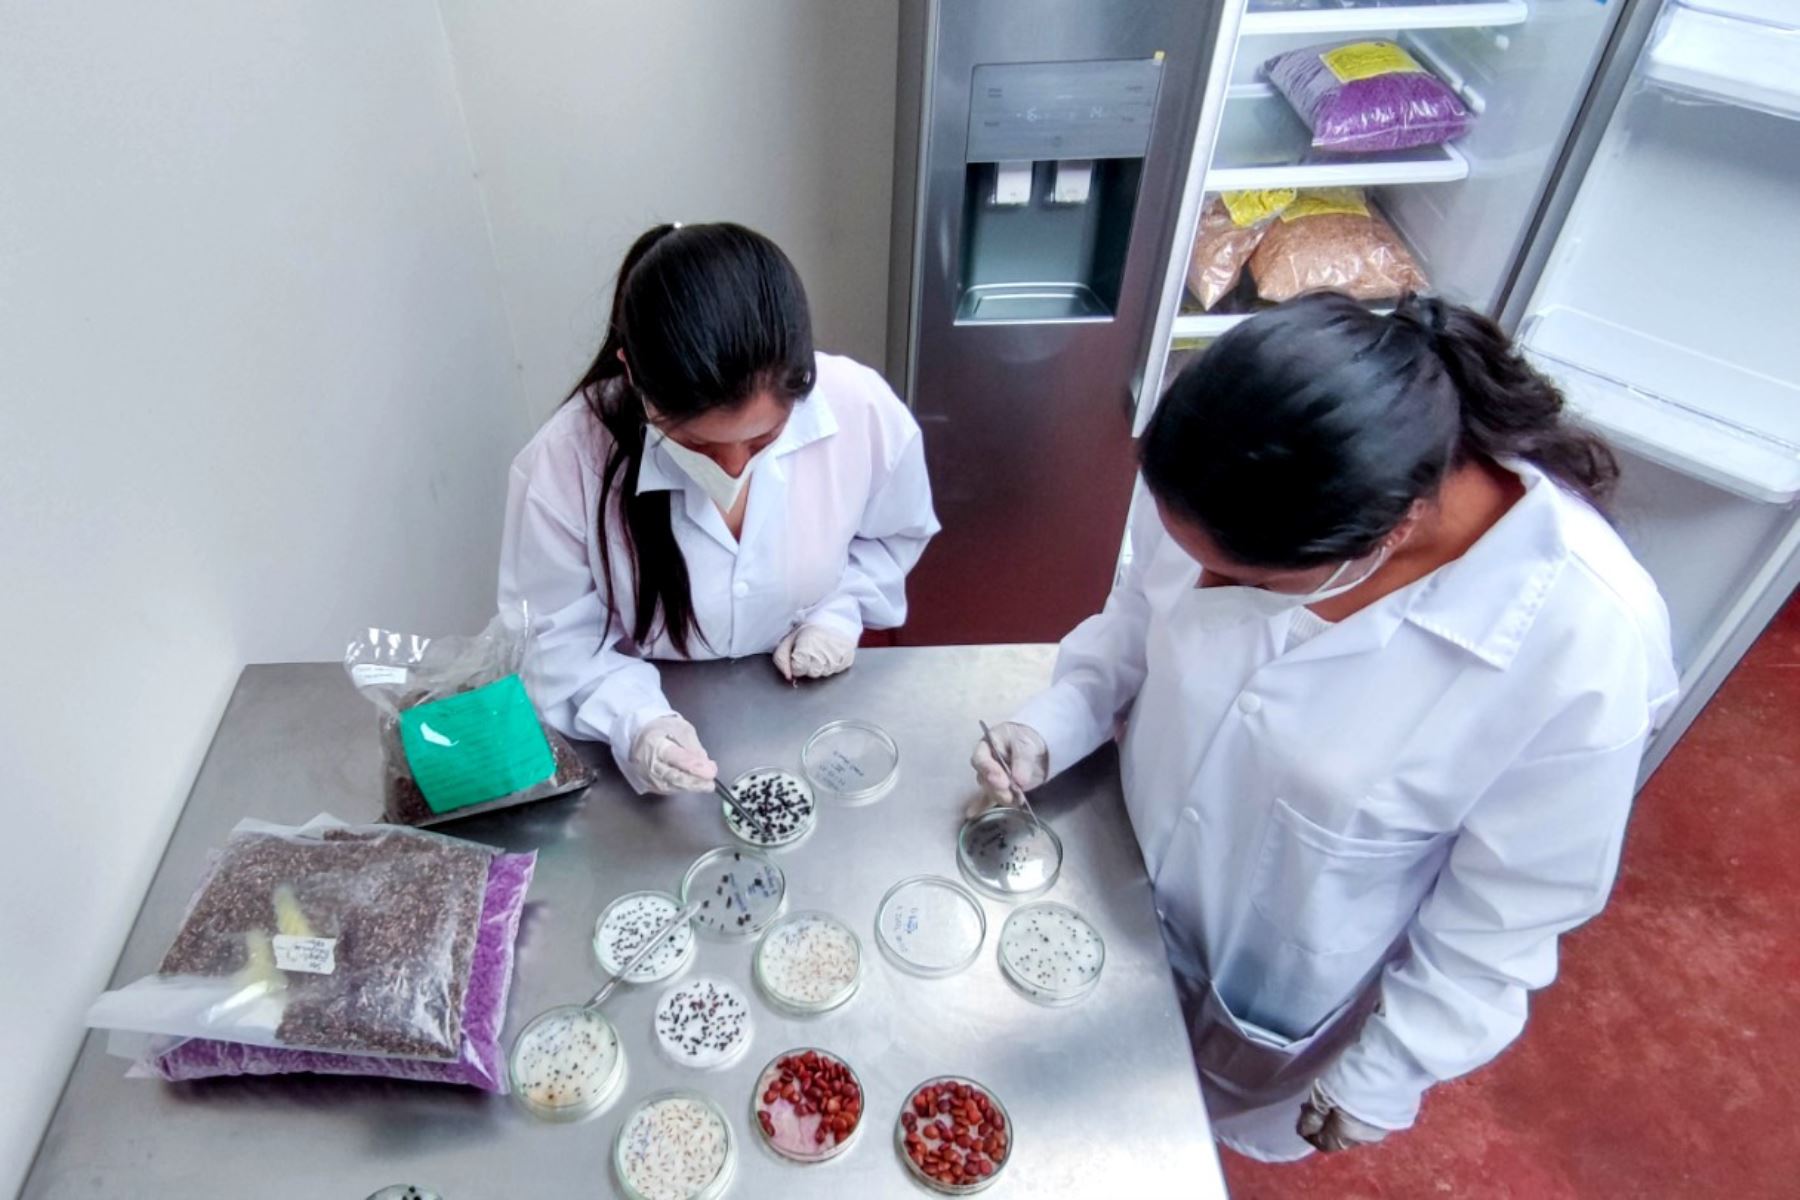 El laboratorio de semillas permitirá capacitar a los estudiantes universitarios de Cajamarca y de otras ciudades del país. Foto: ANDINA/Cortesía Eduard Lozano